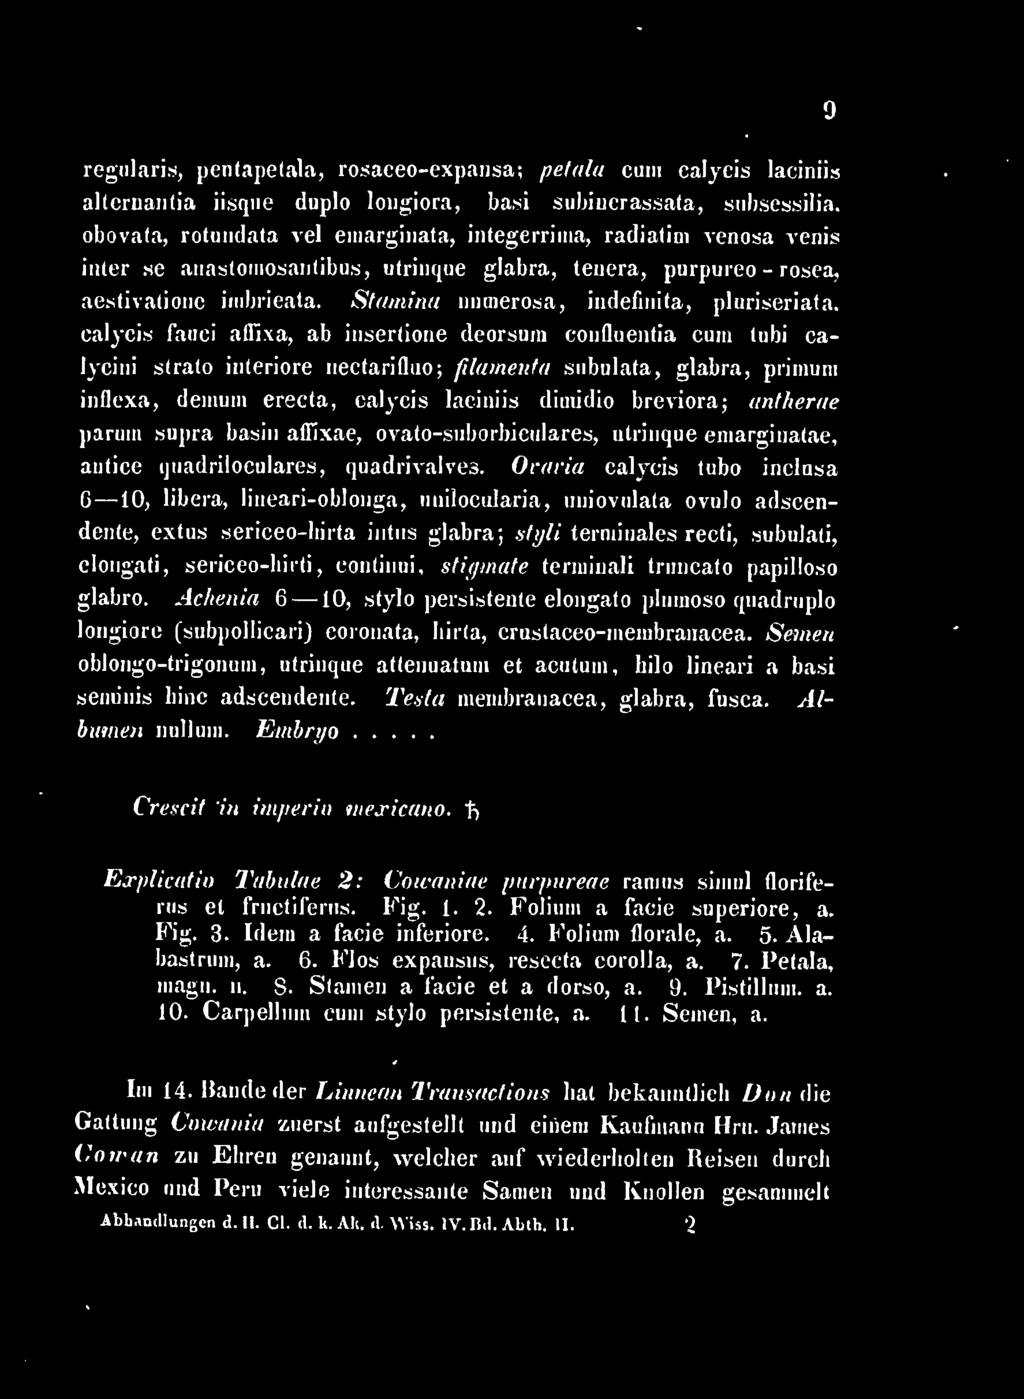 breviora; antherae paruiii supra basiii affixae, ovato-suborbiculares, utiiiique eiuargiuatae, autice quadriloculares, quadrivalved.